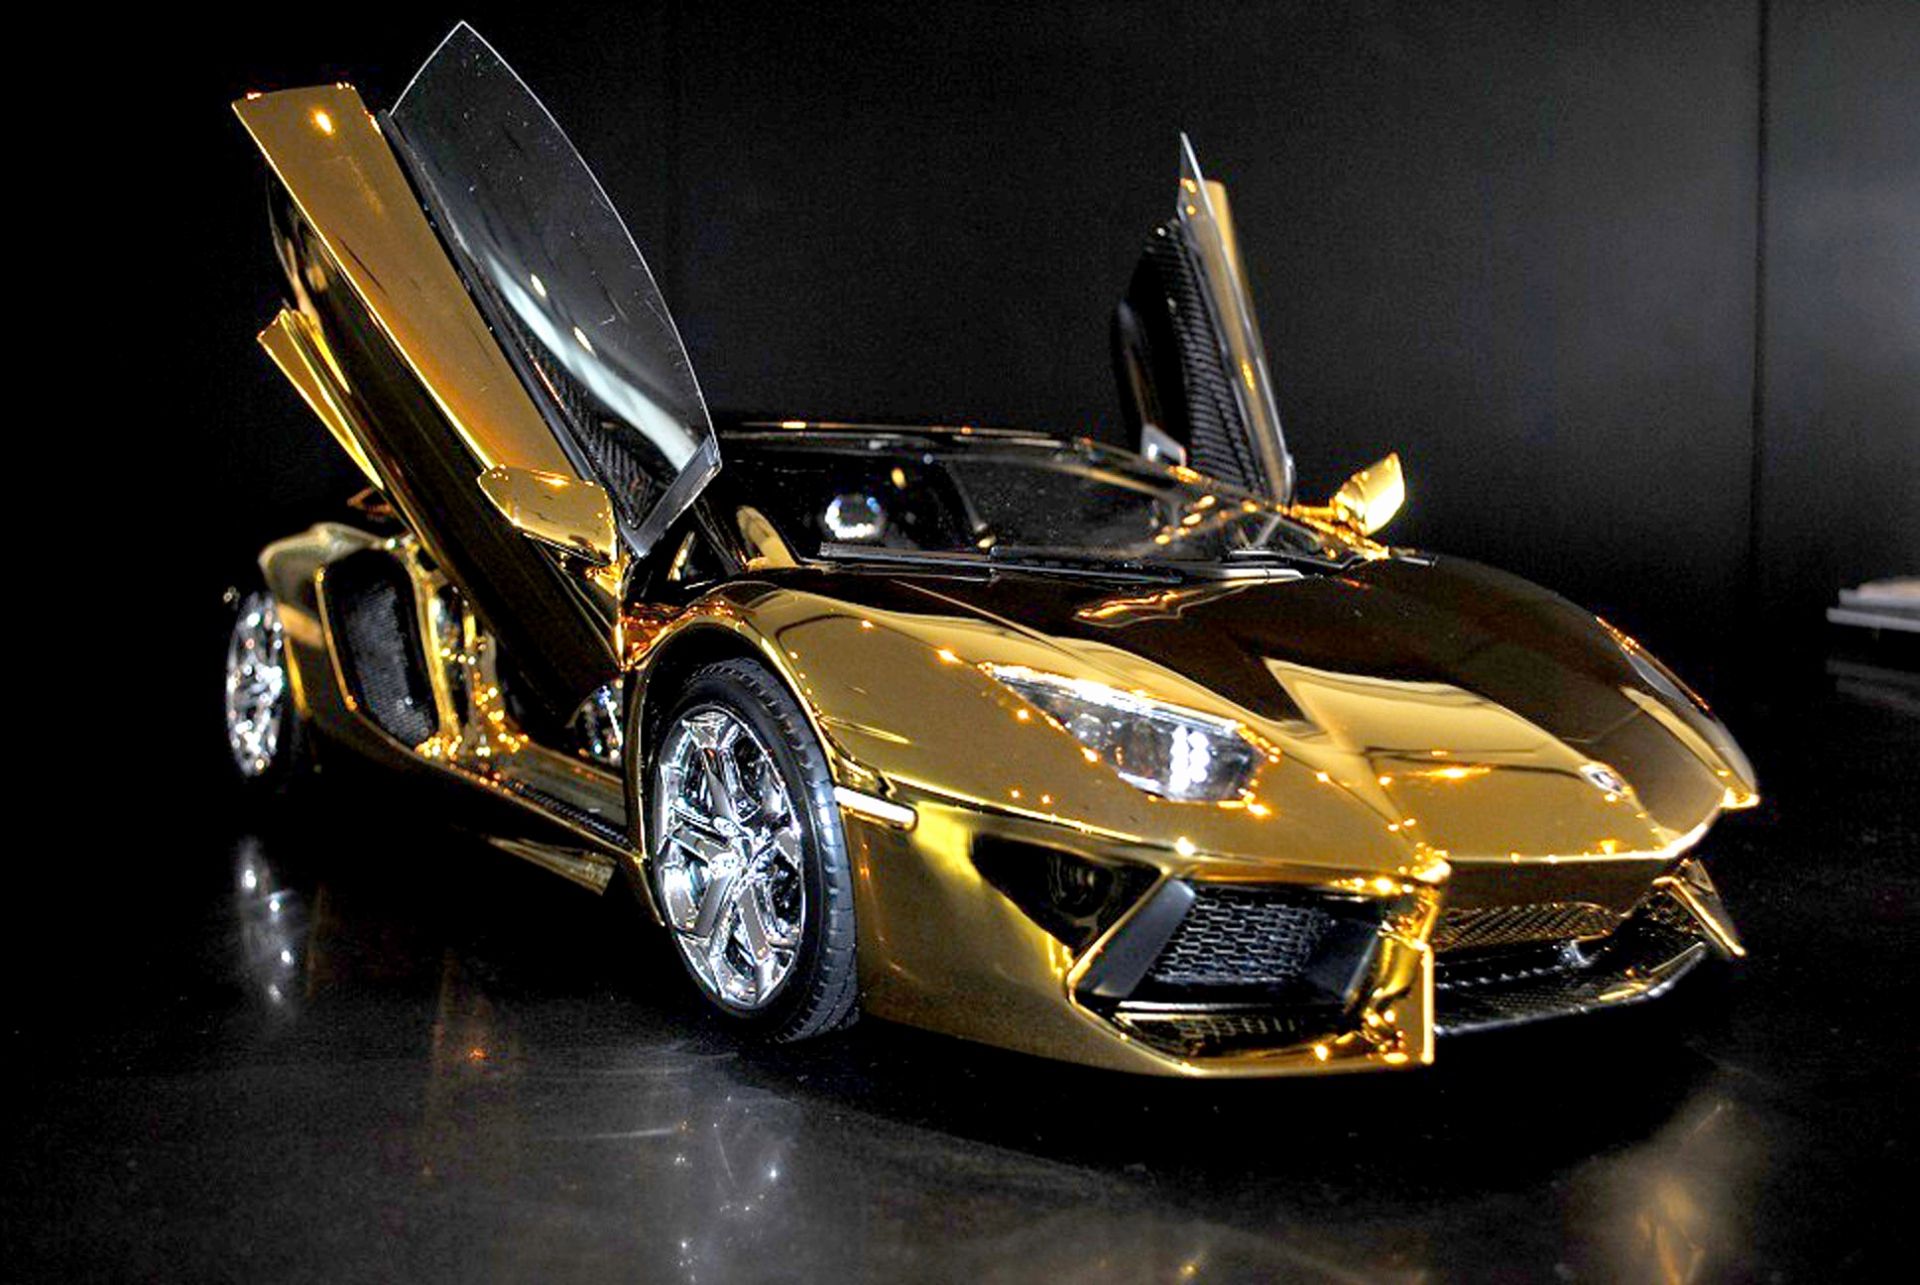 Với bộ sưu tập nền tuyệt đẹp, được làm cho mẫu xe Lamborghini Aventador Gold, bạn sẽ không ngừng ngạc nhiên trong từng giây khi ngắm nhìn những bức ảnh này. Những màu sắc vàng rực rỡ cùng với thiết kế đỉnh cao sẽ giúp chiếc xe trở nên nổi bật và thu hút sự chú ý của mọi người. Đừng bỏ lỡ cơ hội ngắm nhìn những bức ảnh tuyệt đẹp này nhé!